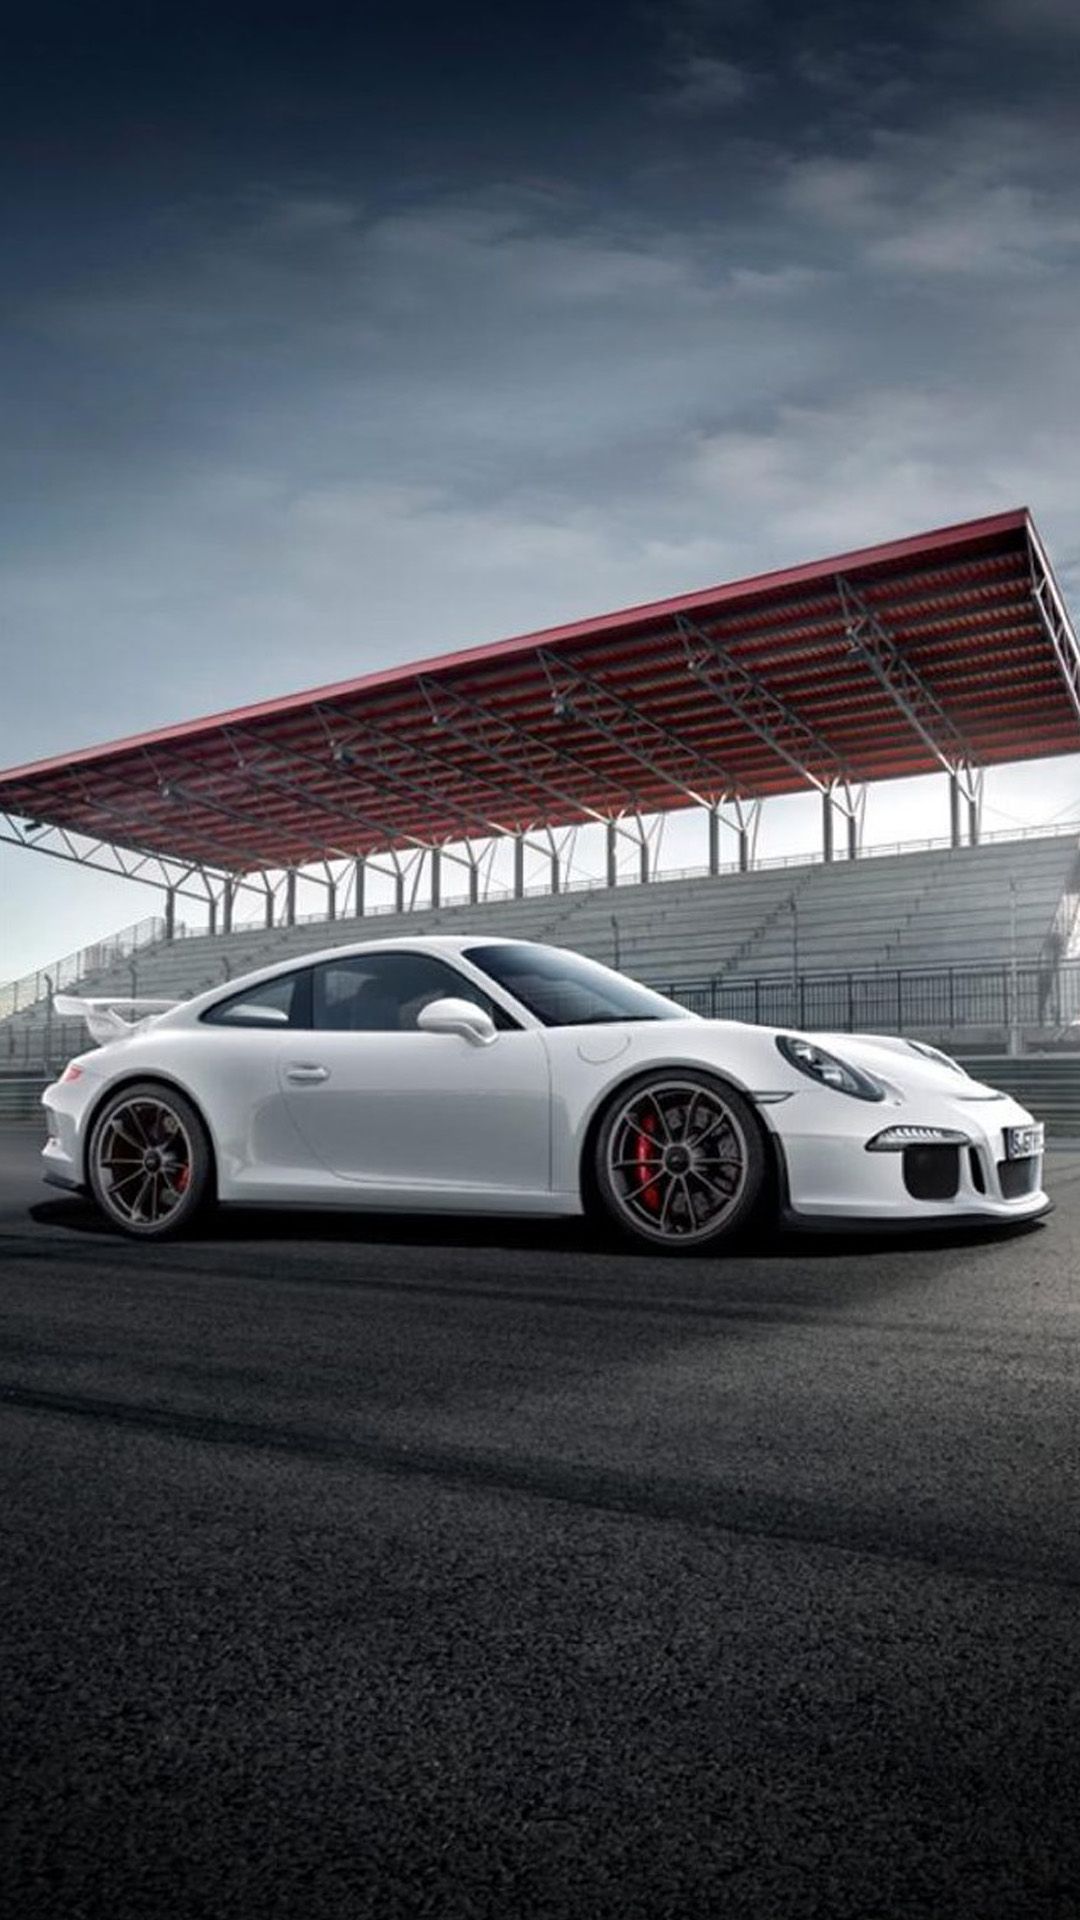 Hình nền siêu xe Porsche Full HD cho iPhone